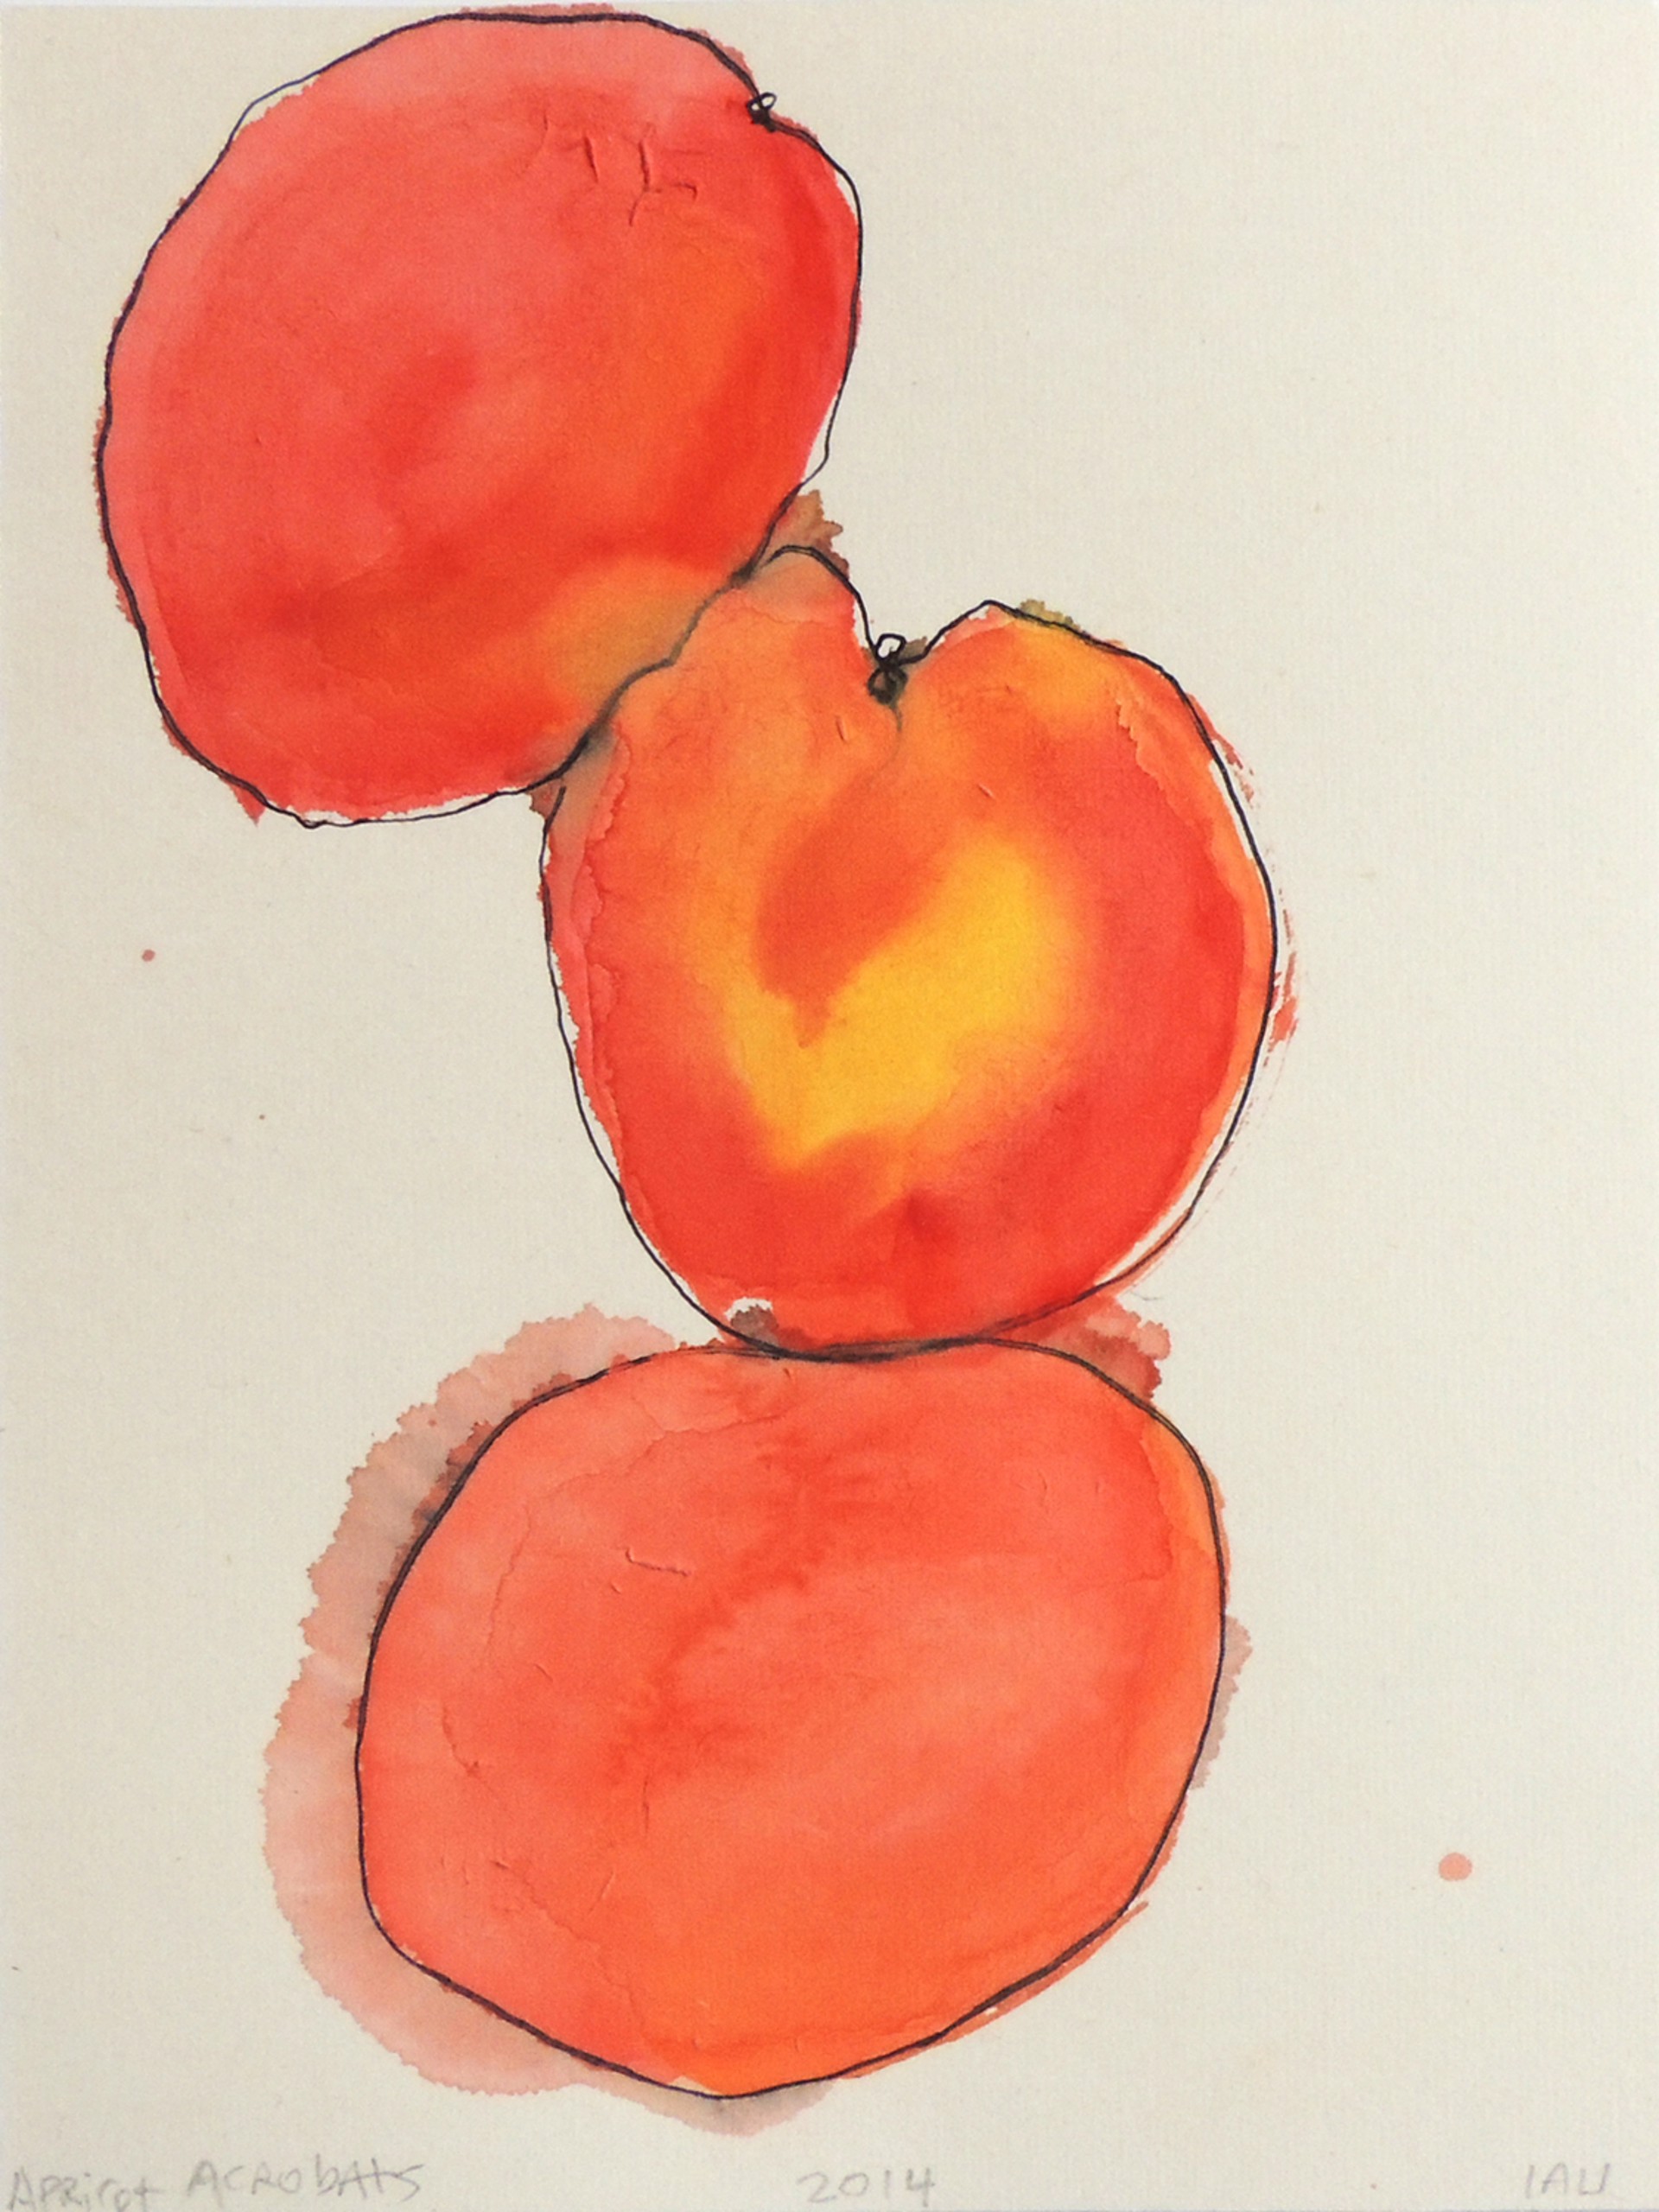 apricot acrobats by Alan Lau